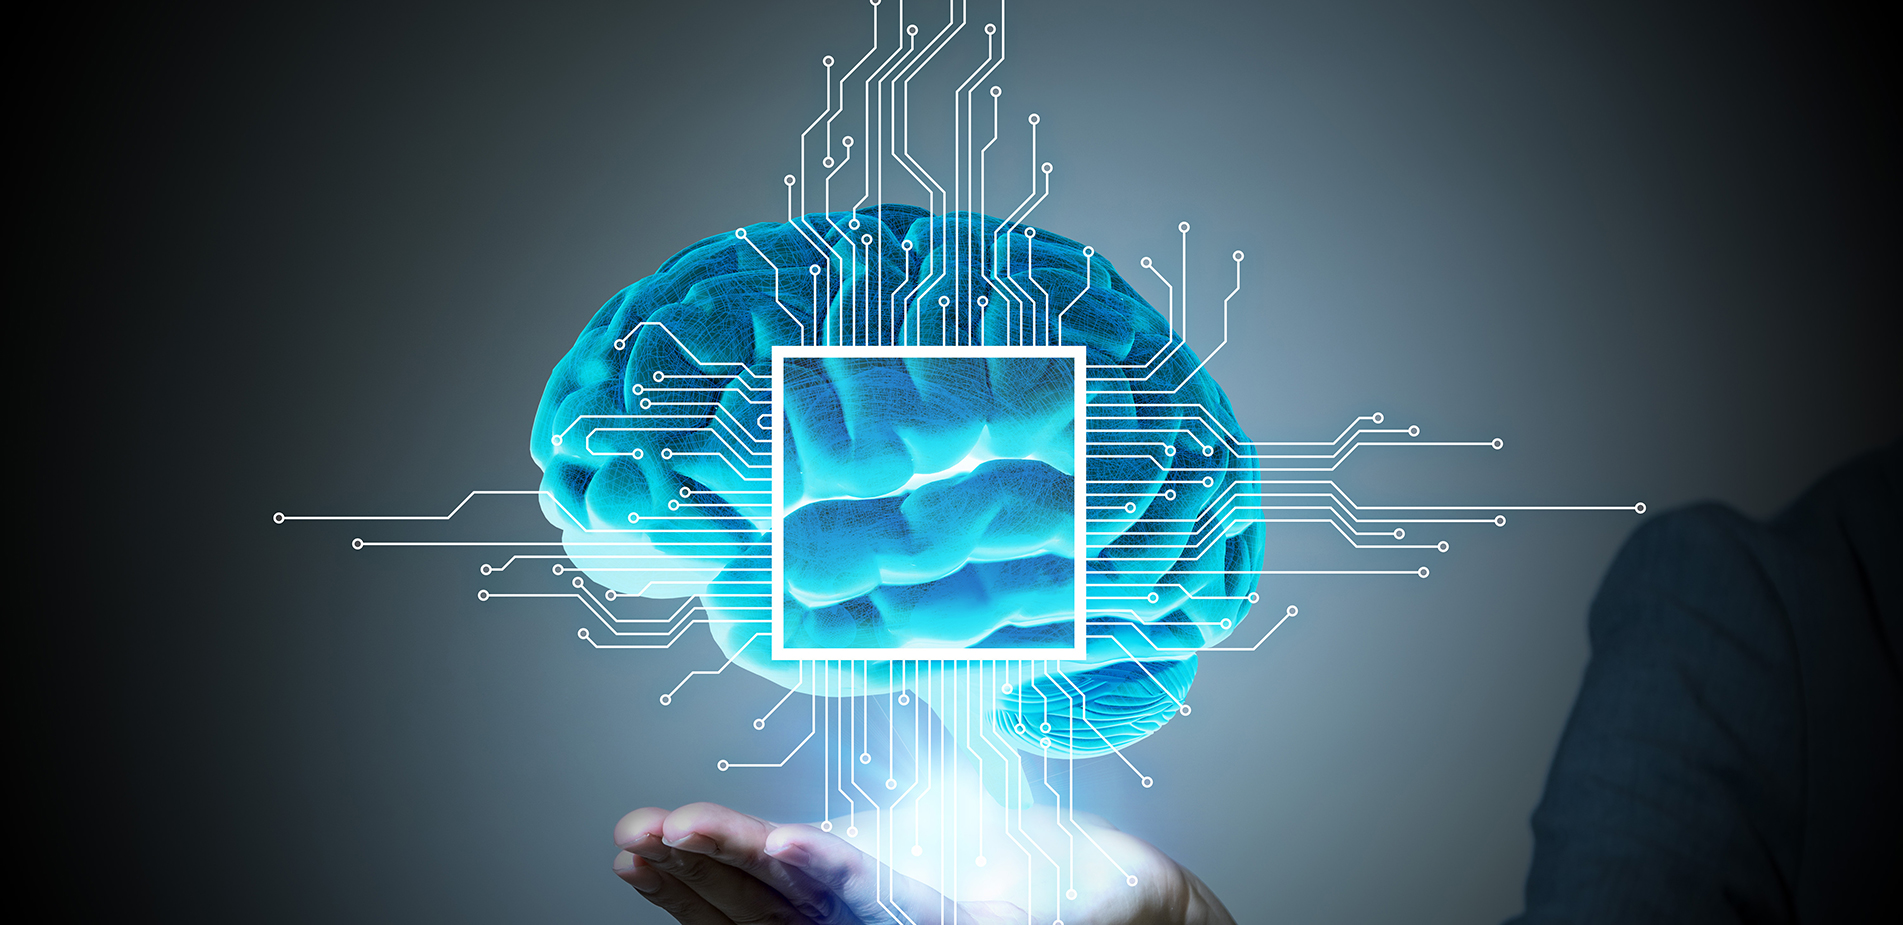 Η Microsoft ανακοίνωσε σημάδια ανθρώπινης σκέψης σε σύστημα τεχνητής νοημοσύνης – Το επίμαχο πείραμα